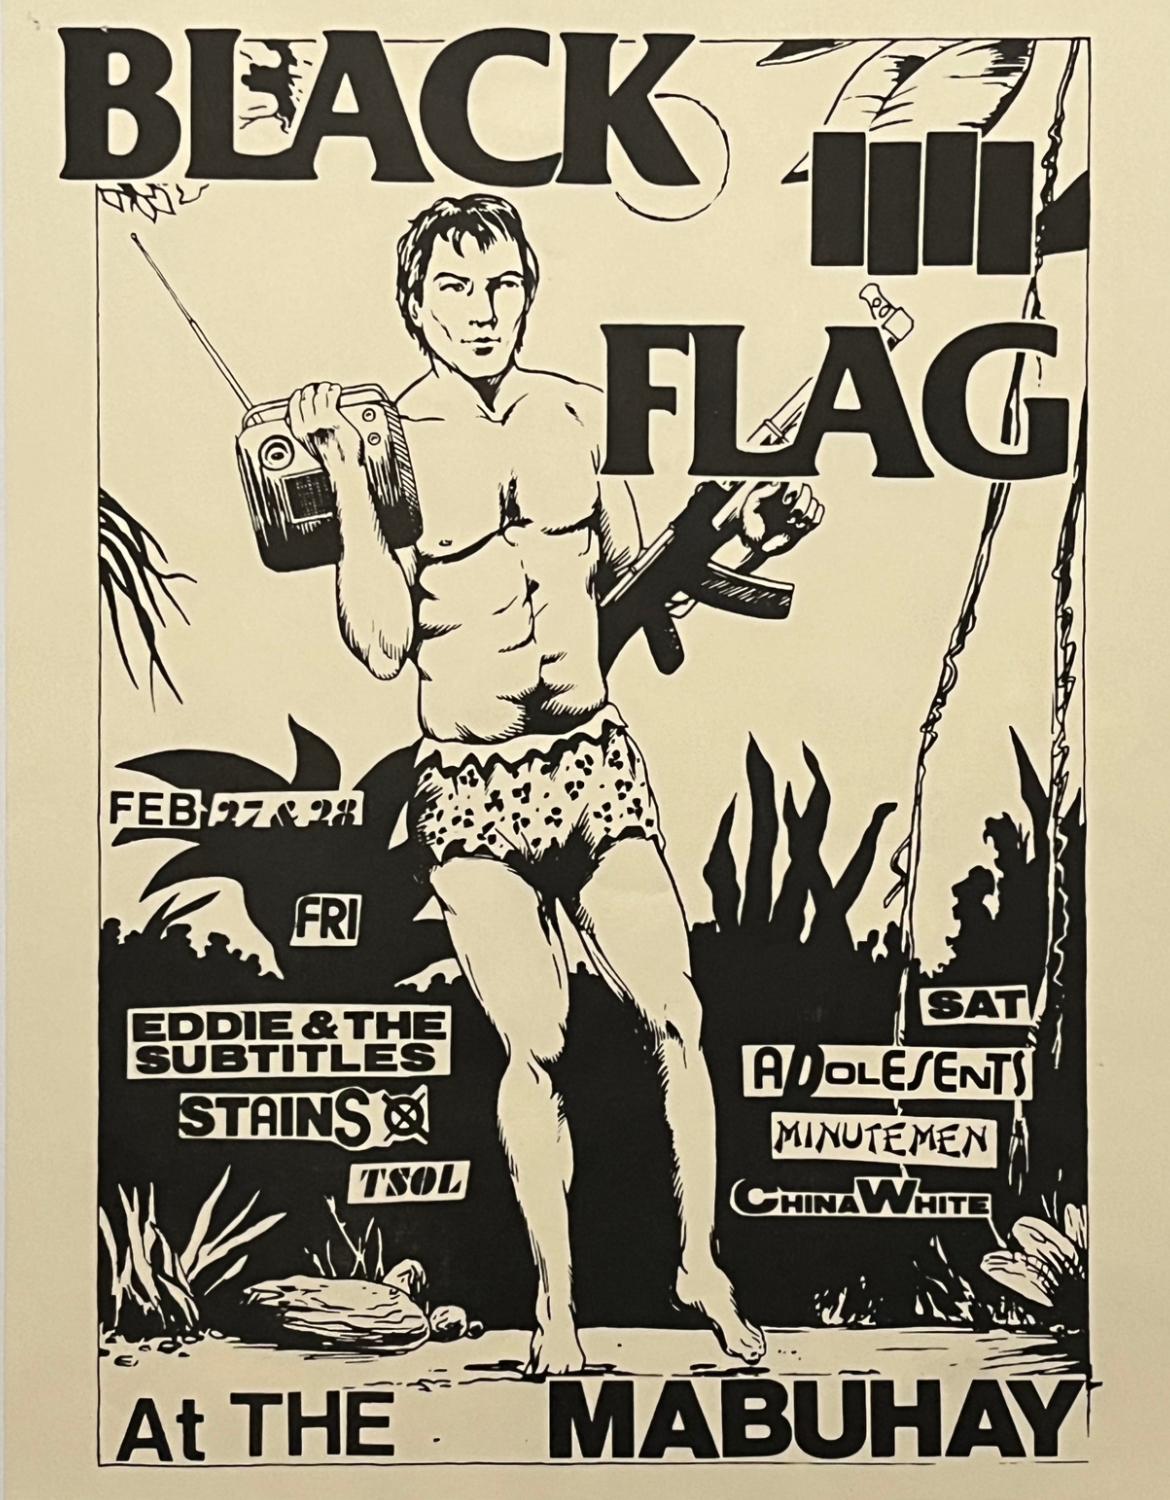 Raymond Pettibon Drapeau noir 1981 :
Un rare flyer punk illustré par Pettibon publié à l'occasion de : Black Flag at the Mabuhay : Feb 27- Feb 28, 1981. Un concert de Black Flag, Eddie and the Subtitles, Stains, TSOL, Adolescents, Minutemen, China